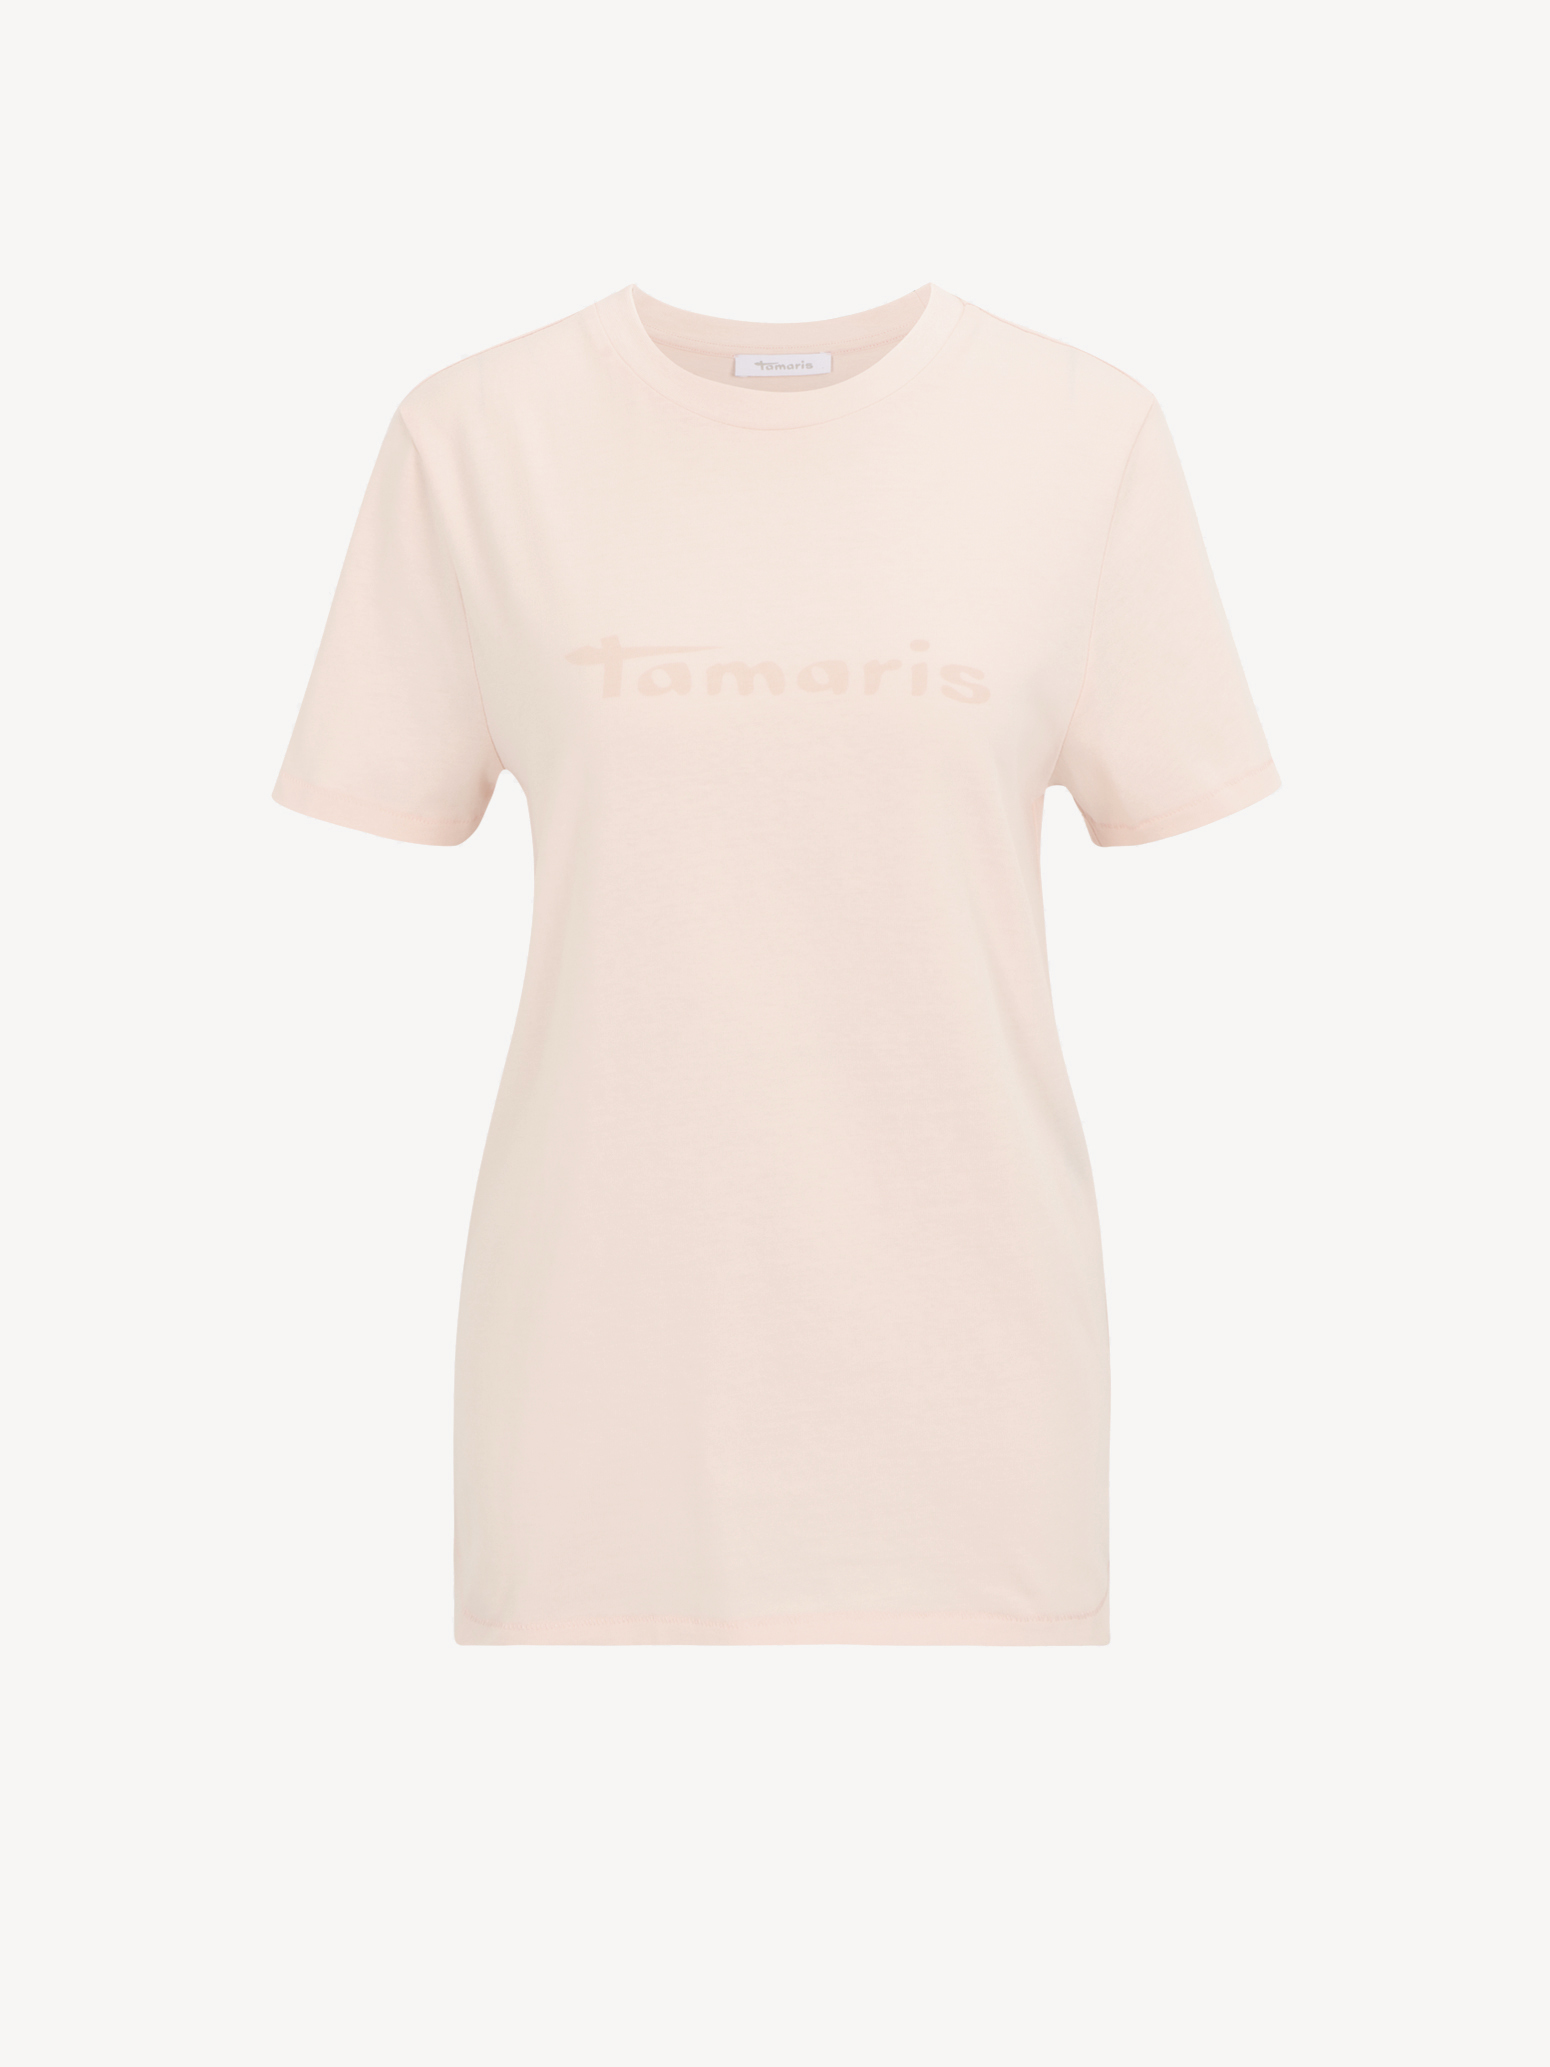 Tričko - růžová